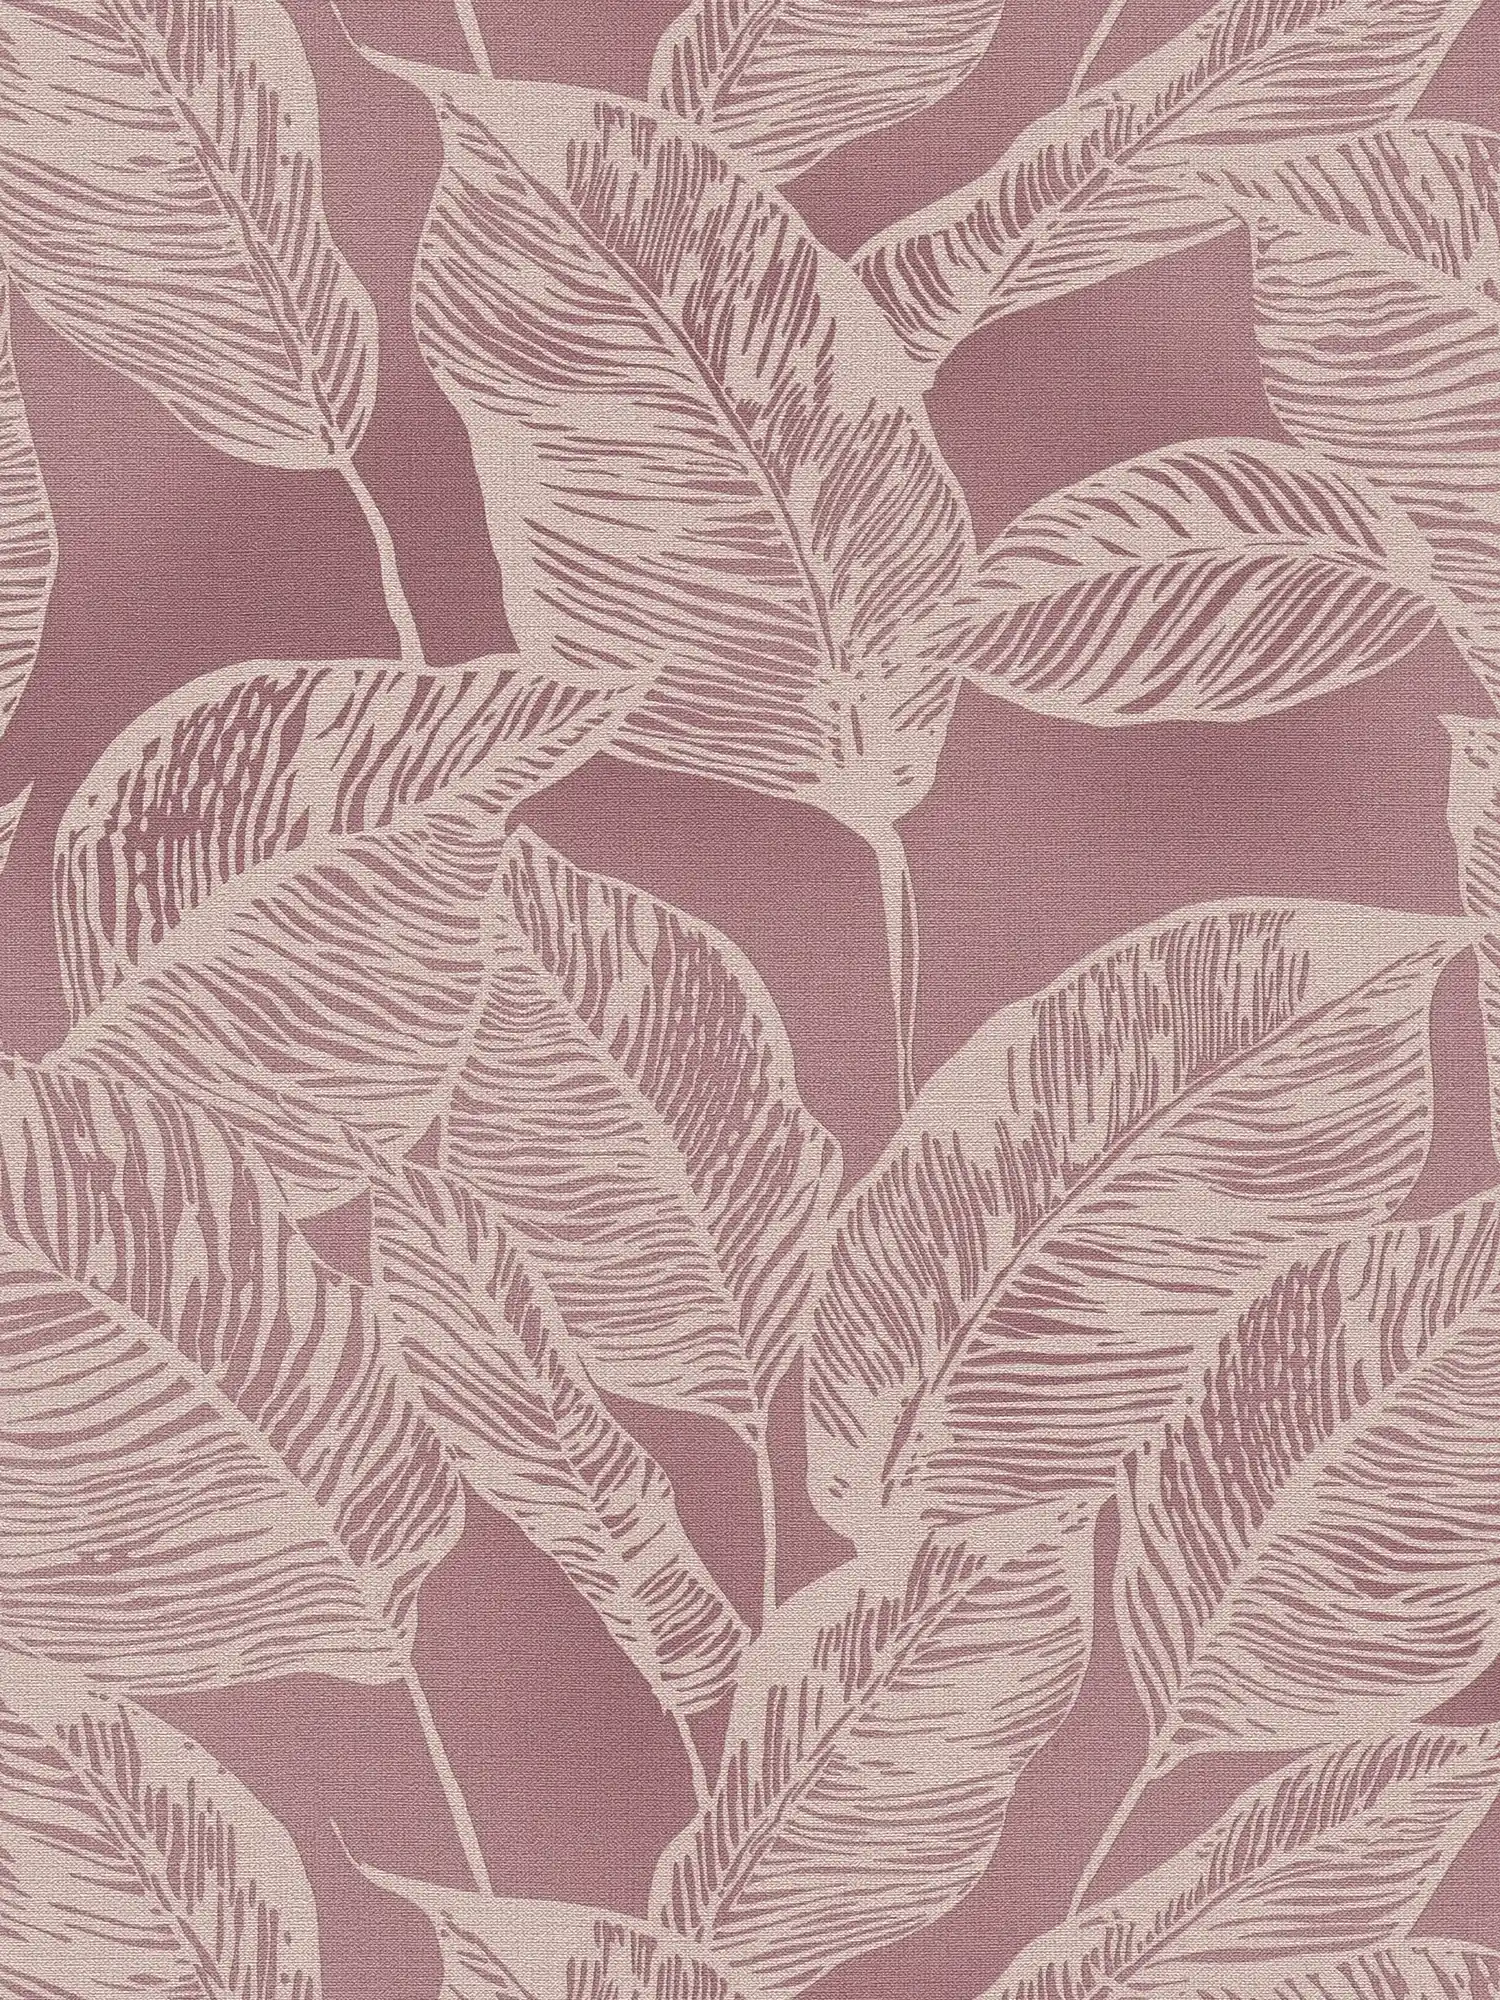 Papel pintado tejido-no tejido sin PVC con motivo de hojas - rosa, crema
